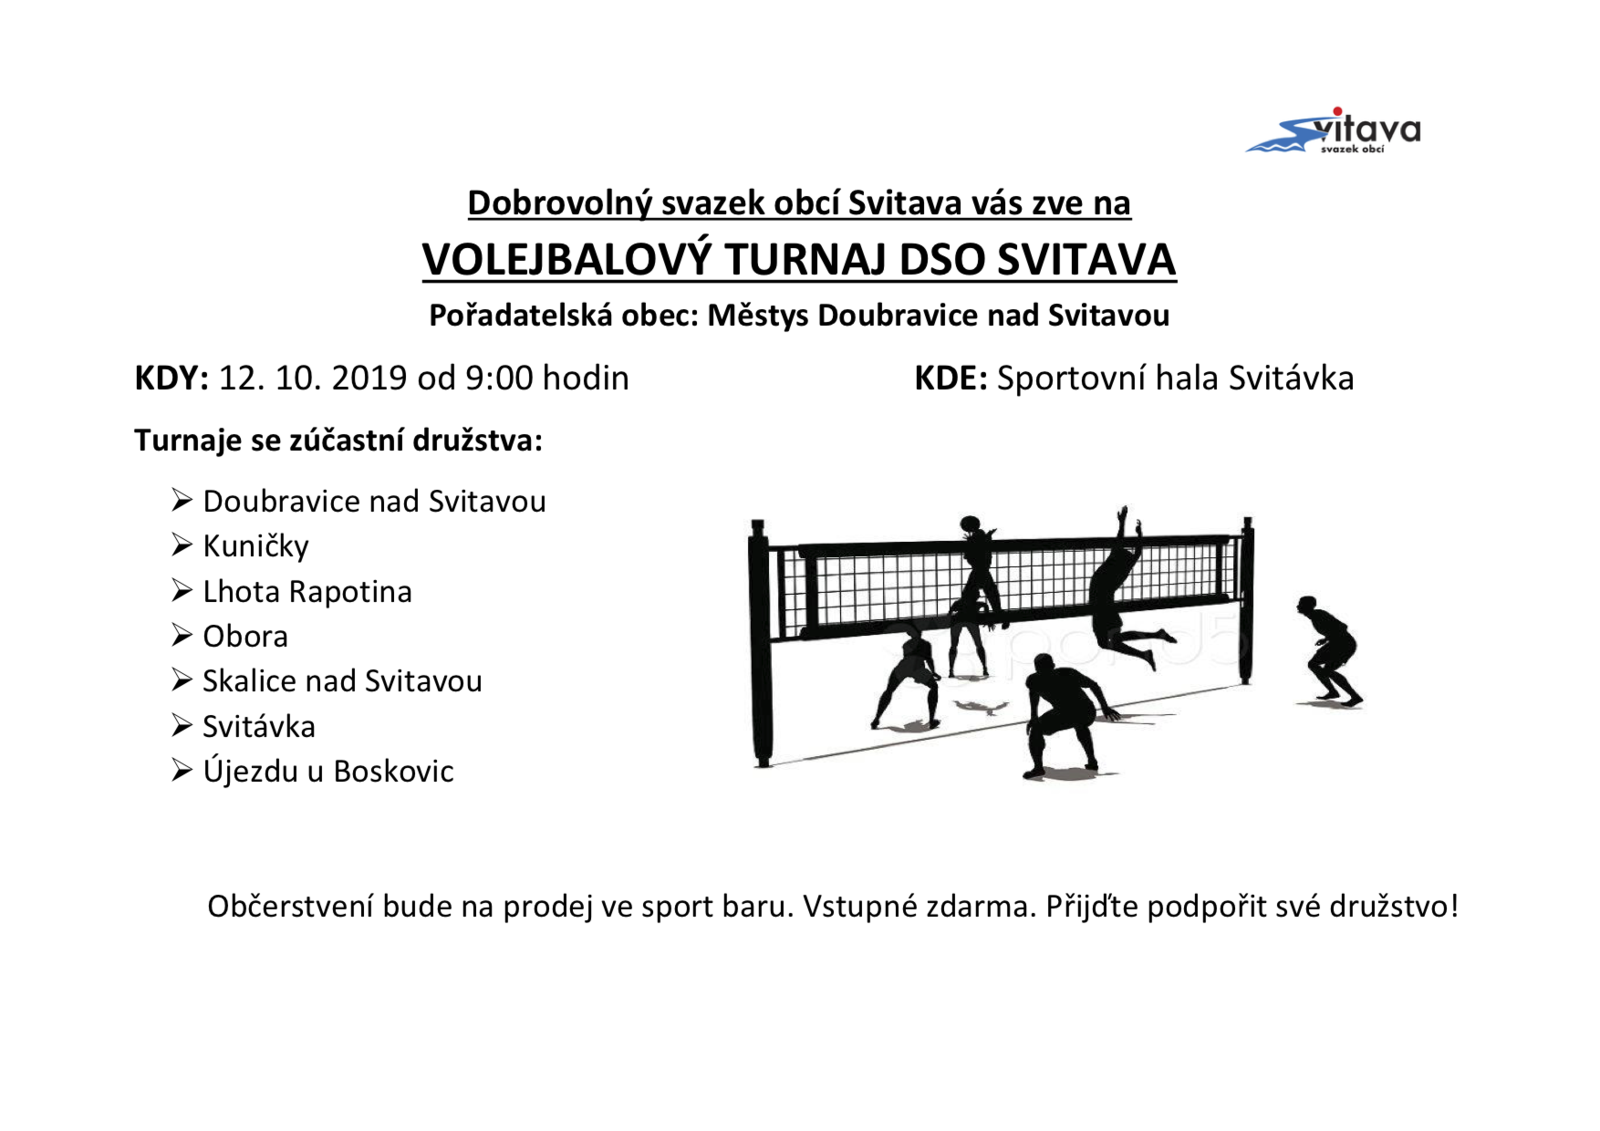 DSO Svitava - volejbalový turnaj.png